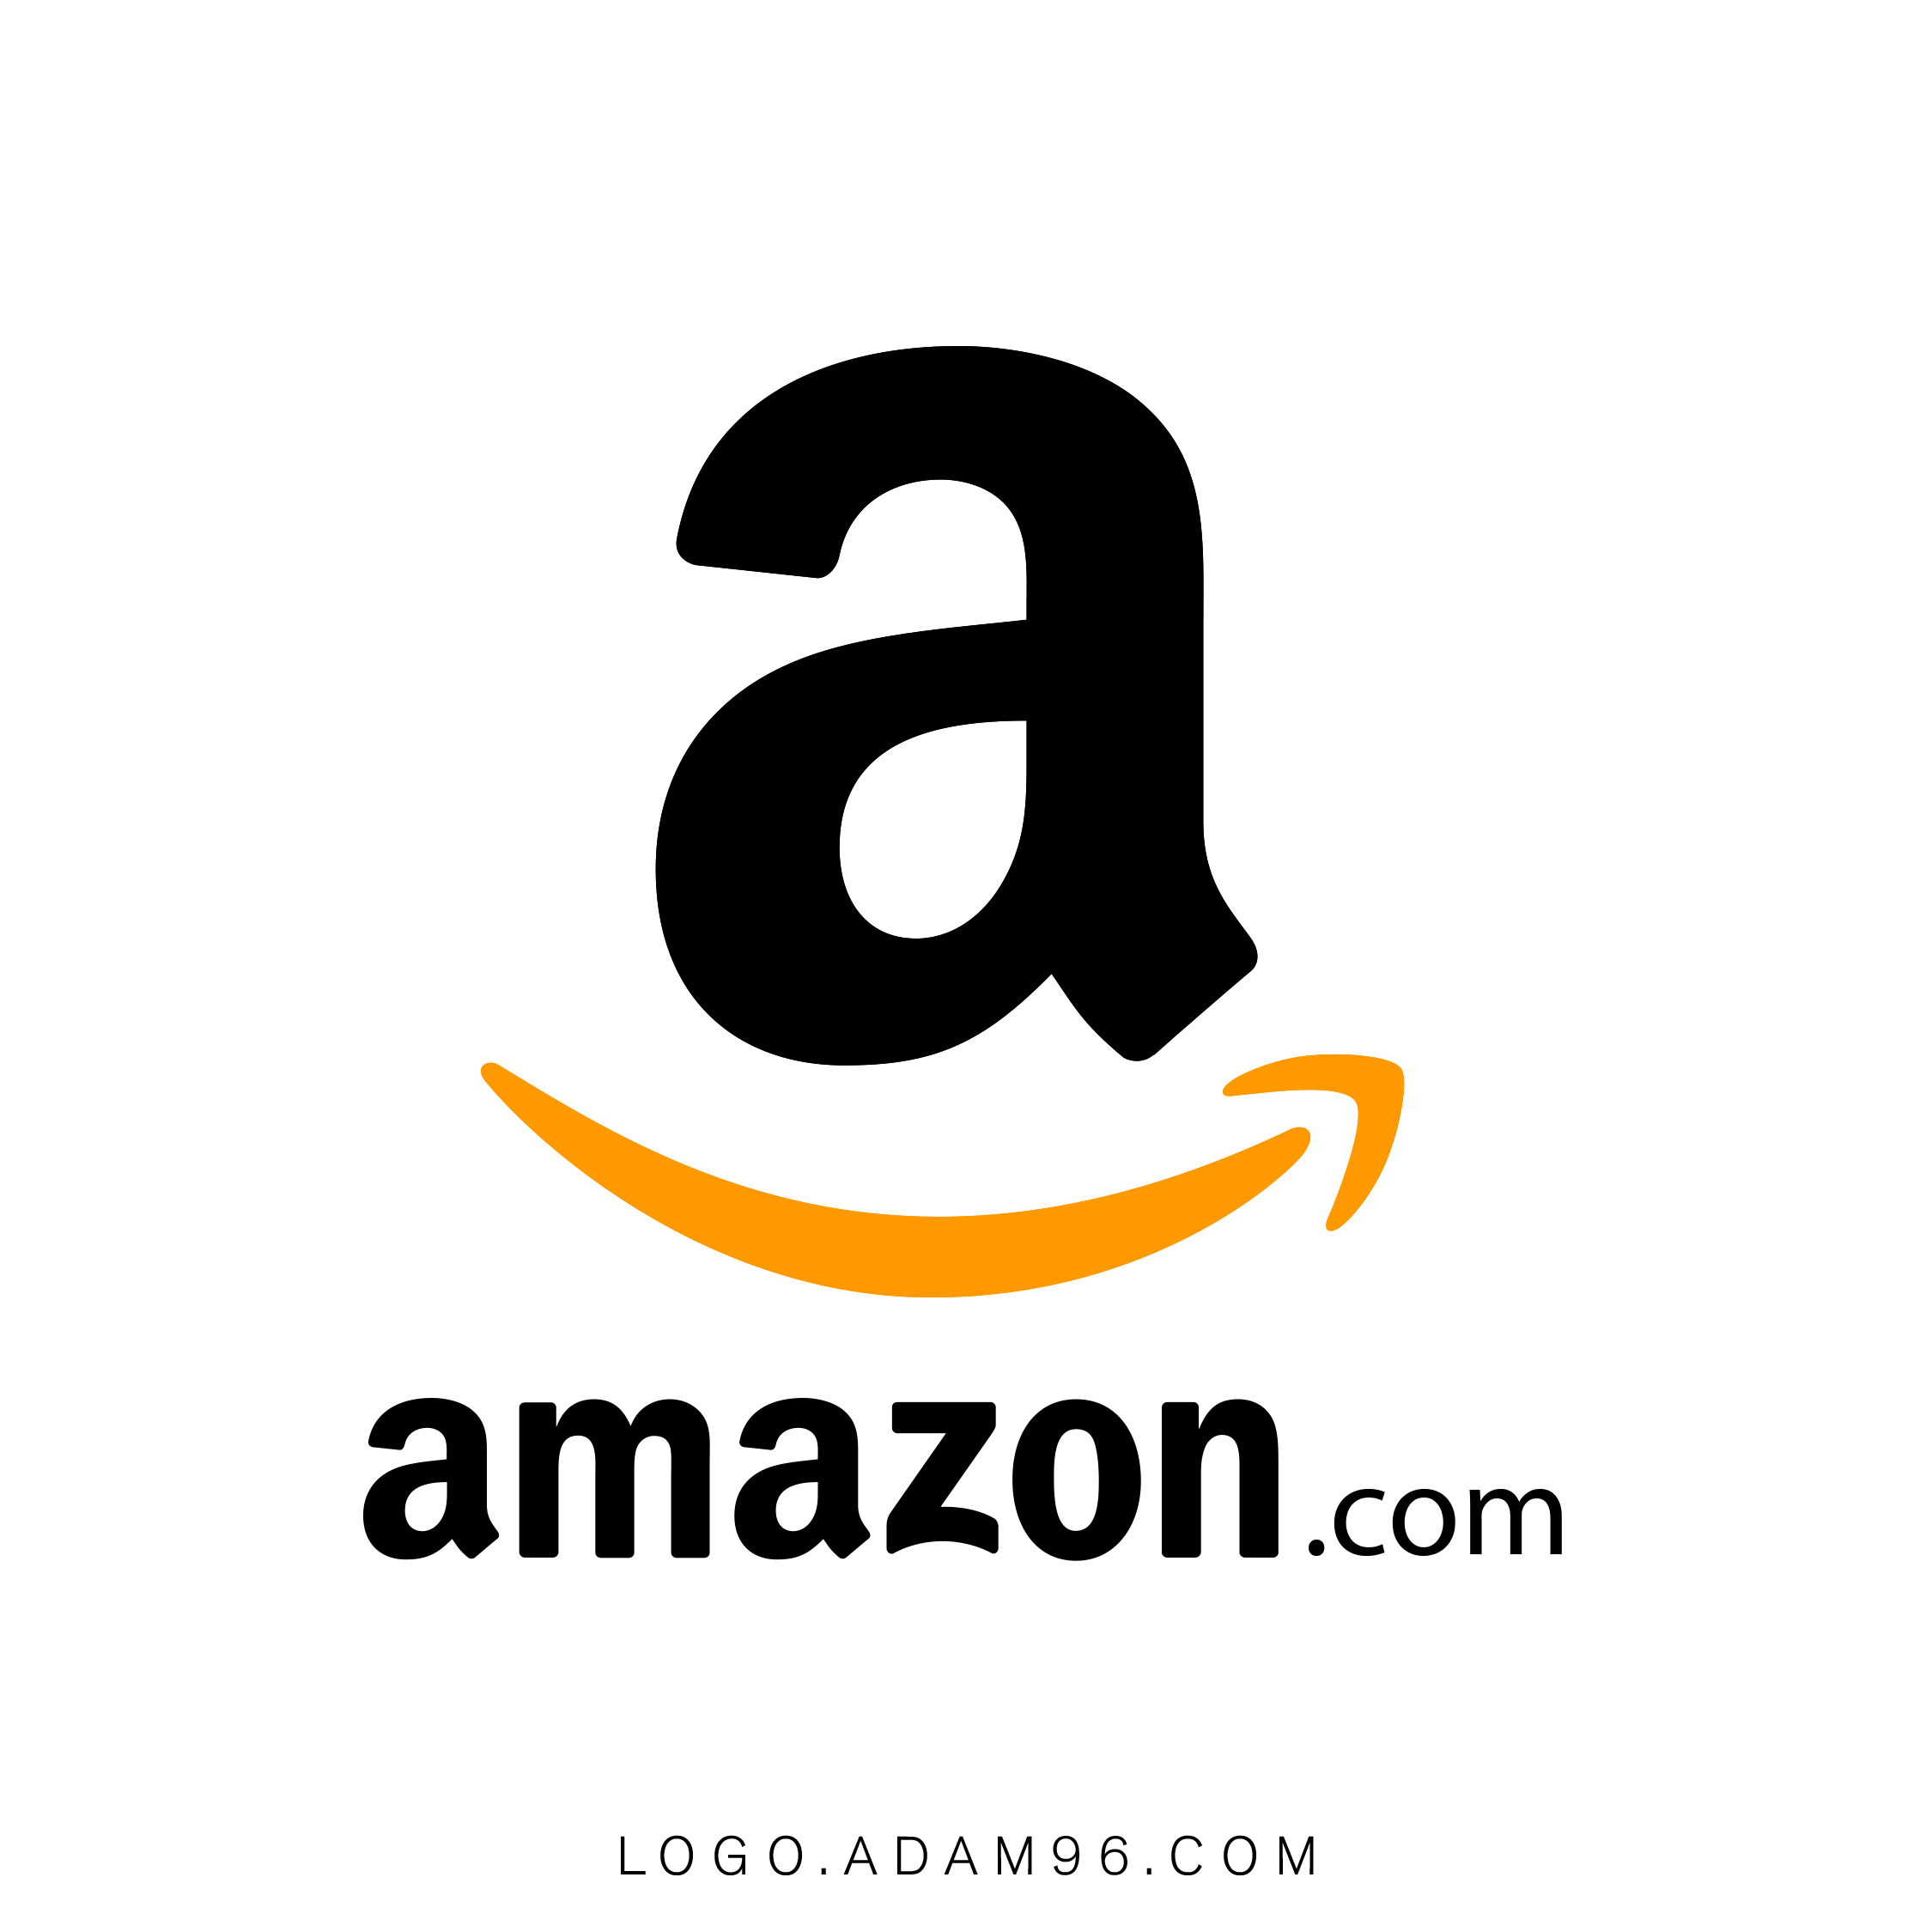 تحميل شعار شركة امازون العالمية Logo Amazon PNG - SVG